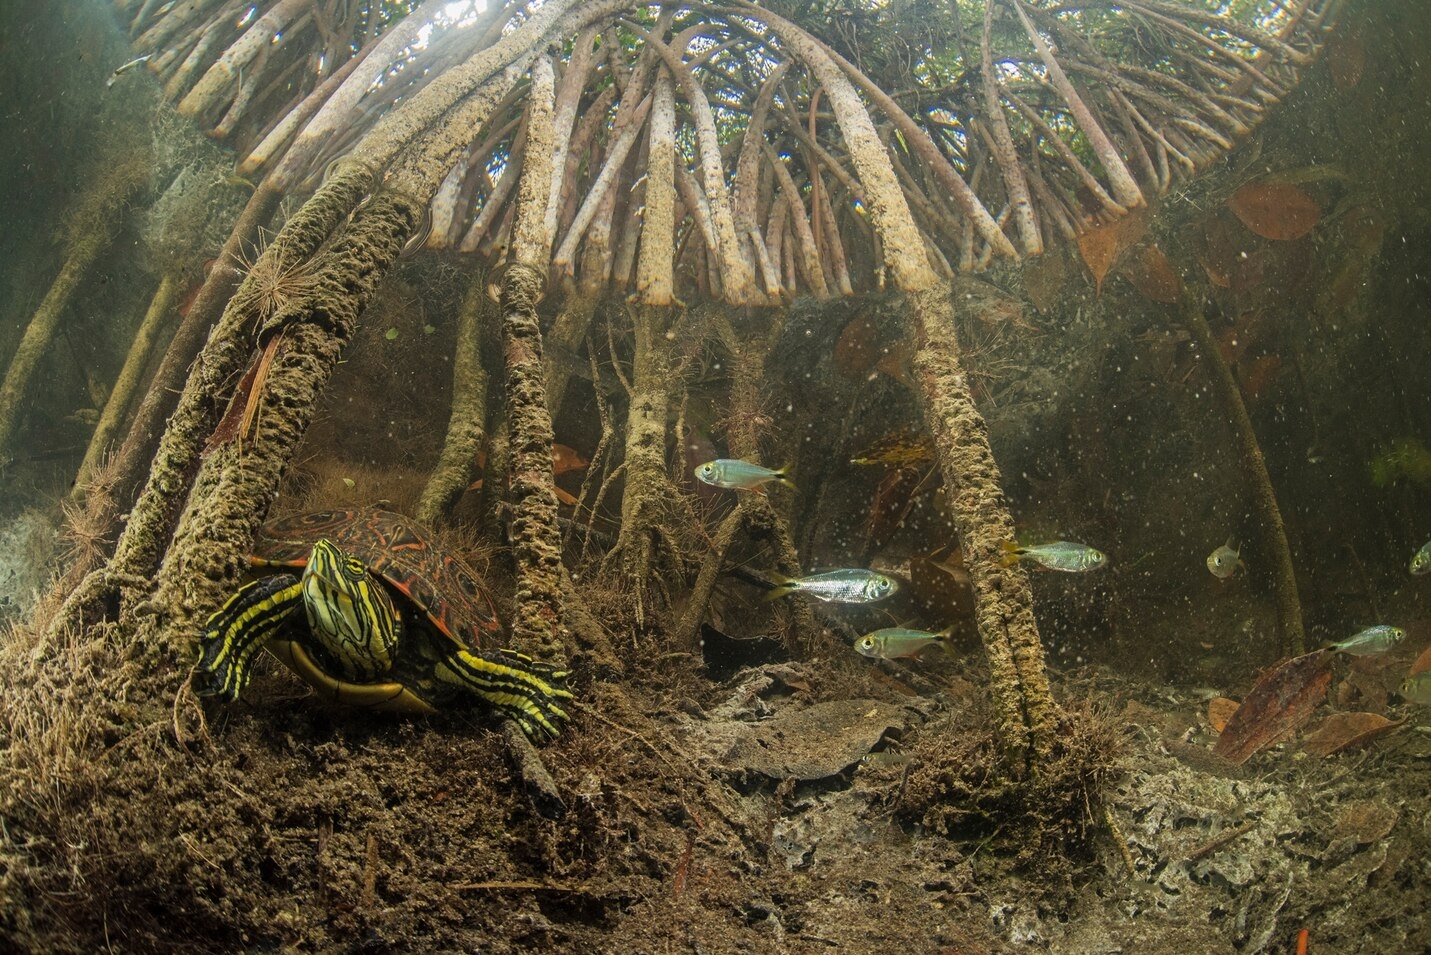 錦龜在紅樹林水下根部找到藏身處。 PHOTOGRAPH BY OCTAVIO ABURTO 